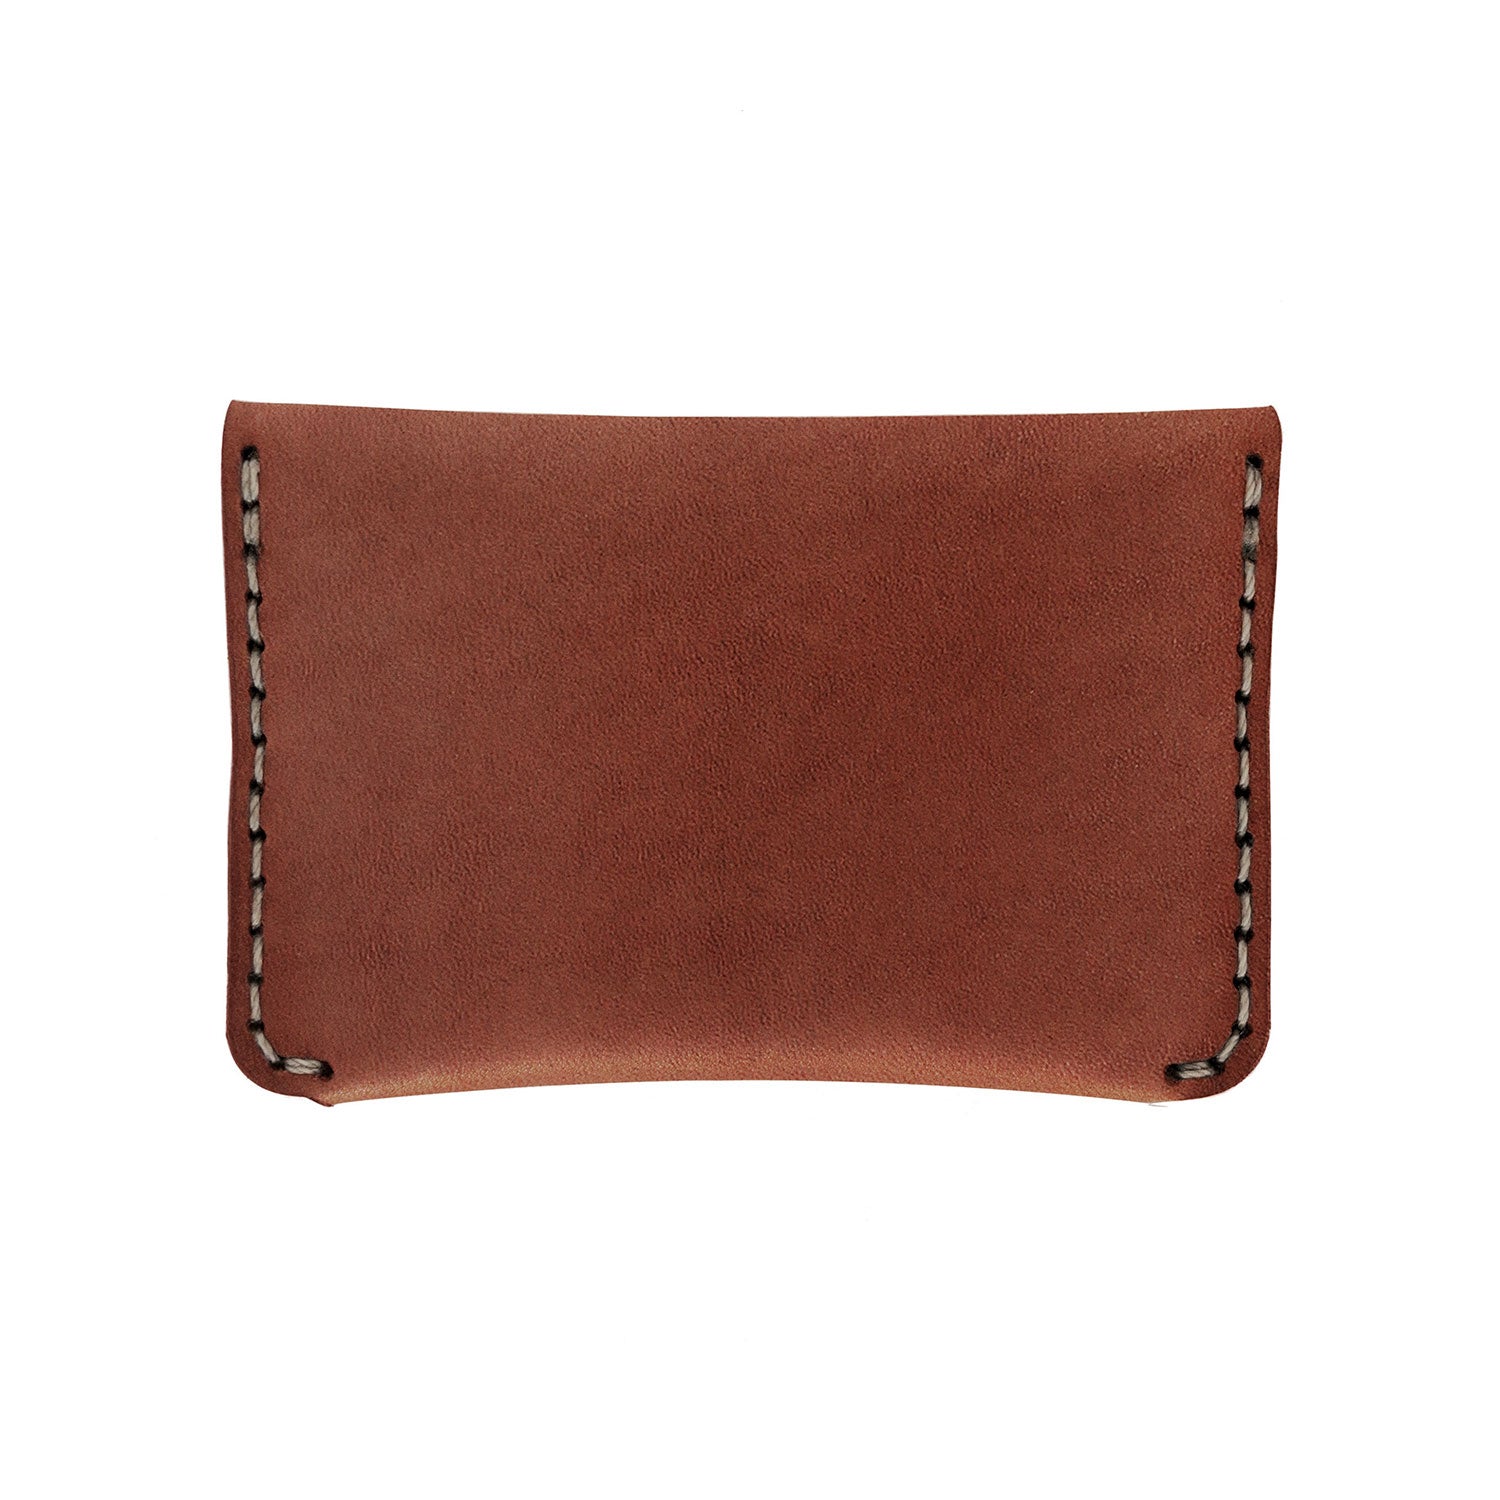 Flap Slim Wallet Cognac  Leather